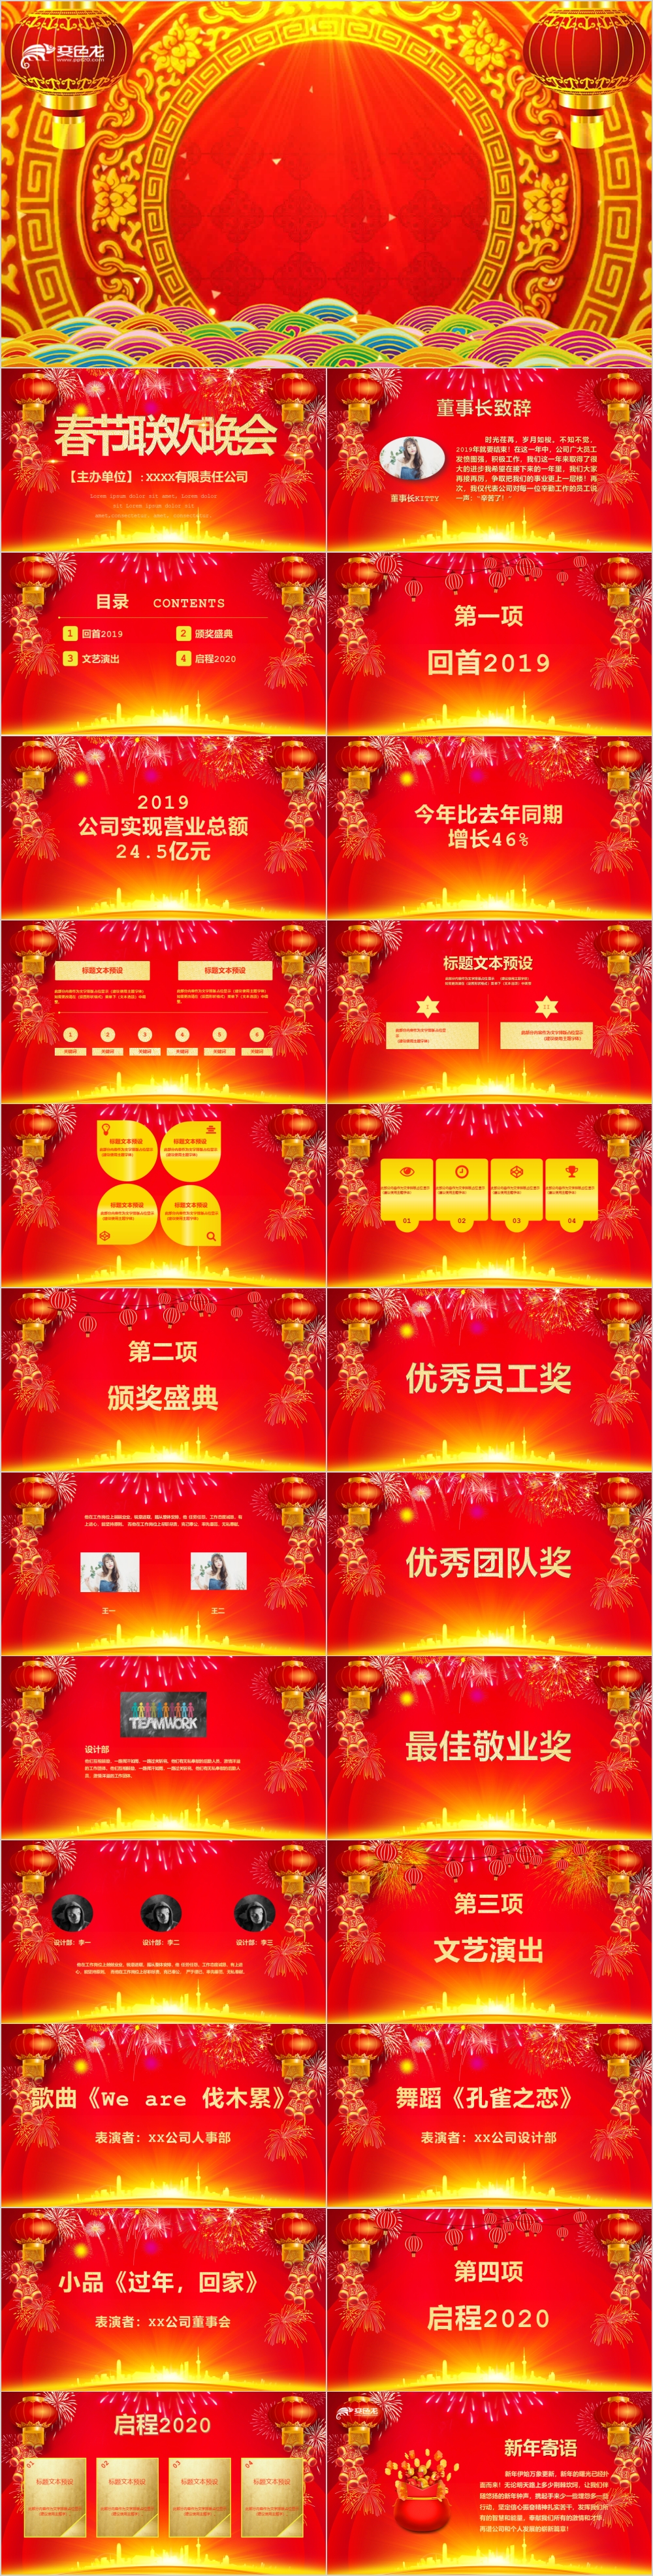 2020年公司红色酷炫春节联欢晚会企业年终盛典ppt模板